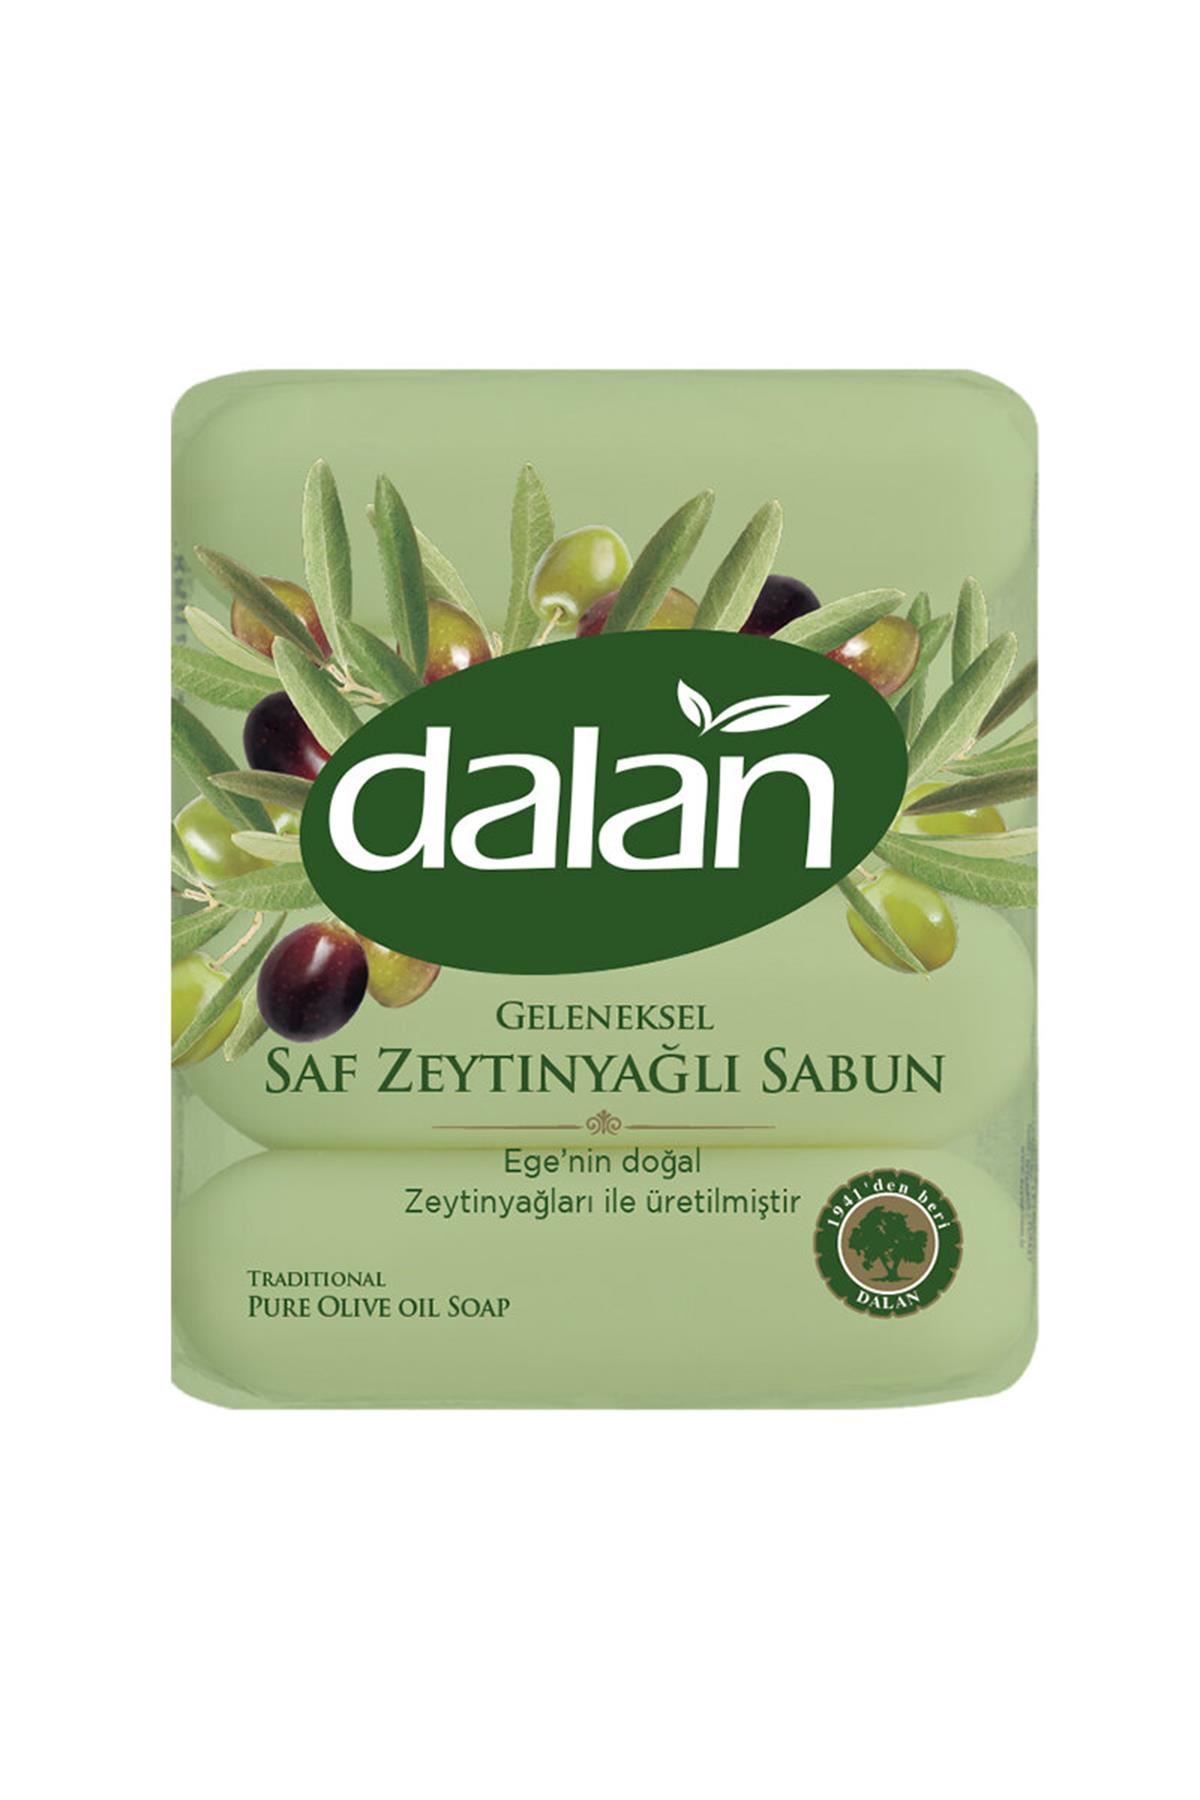 dalan-geleneksel-saf-zeytinyagli-sabun-4-x-70-gr-8950-1.jpg